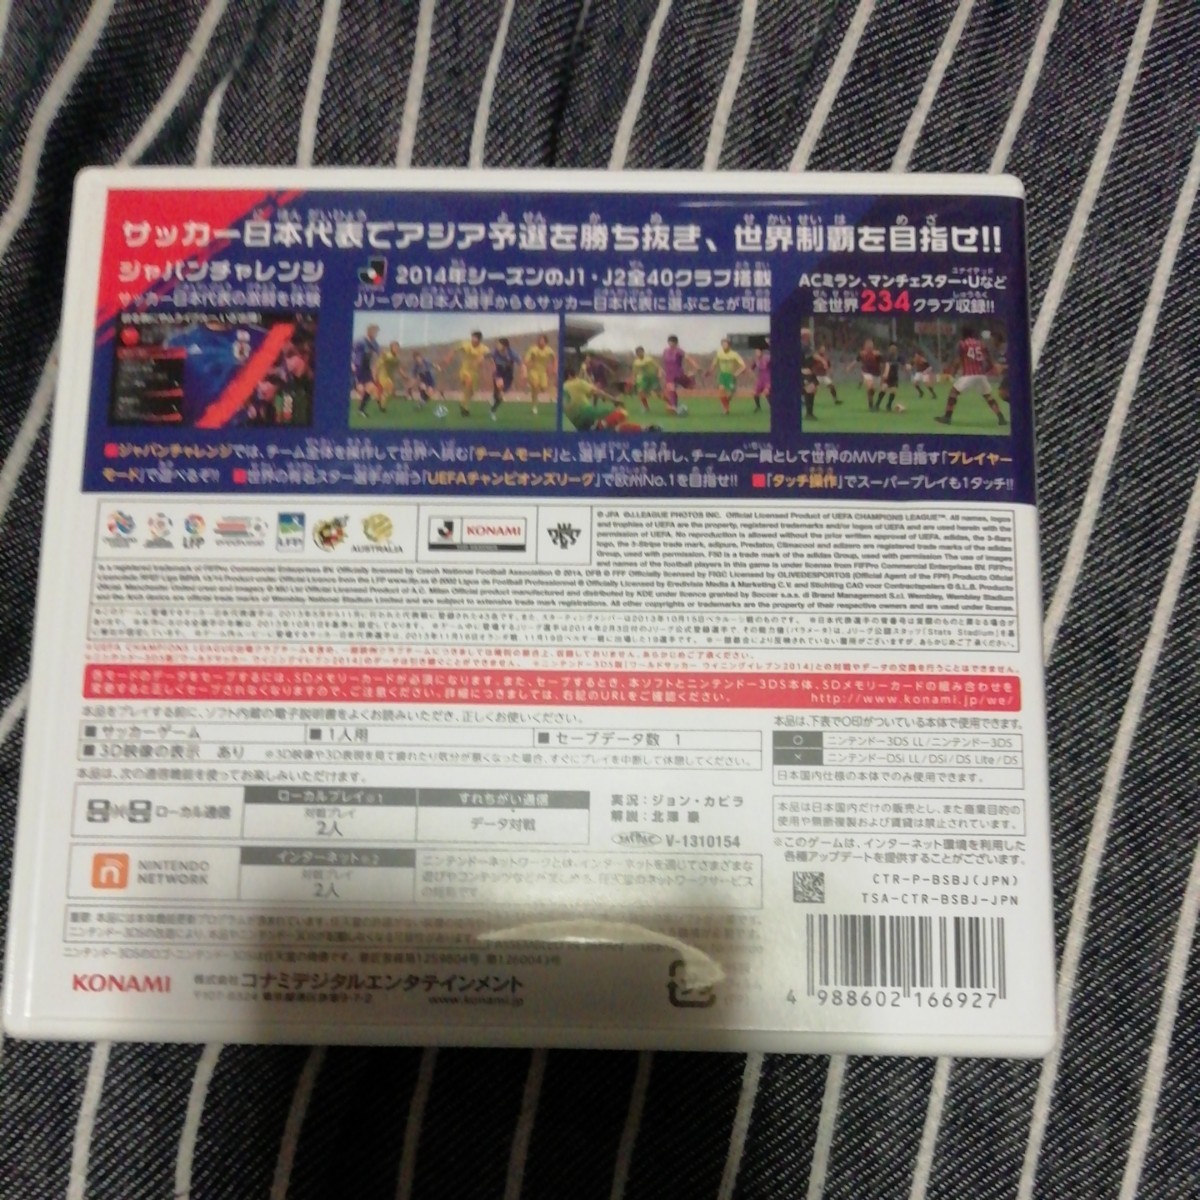 【3DS】 ワールドサッカー ウイニングイレブン 2014 蒼き侍の挑戦